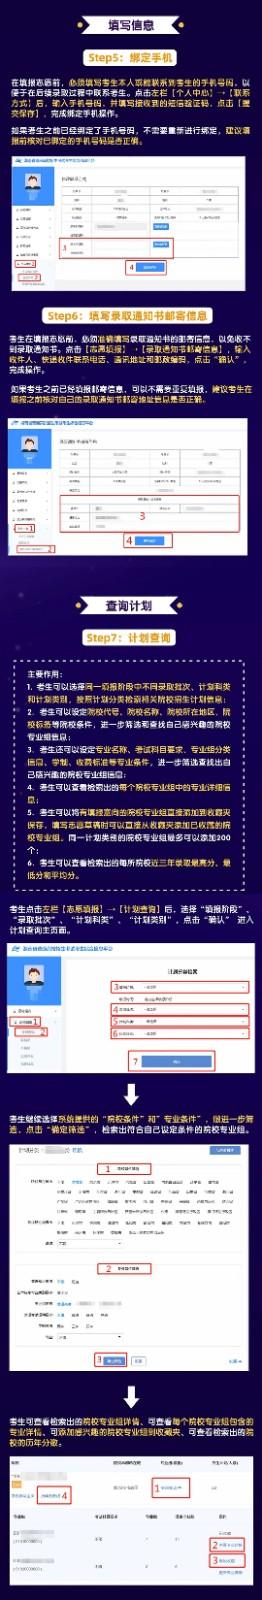 2021年湖南新高考志愿填报系统操作指南（WEB版）